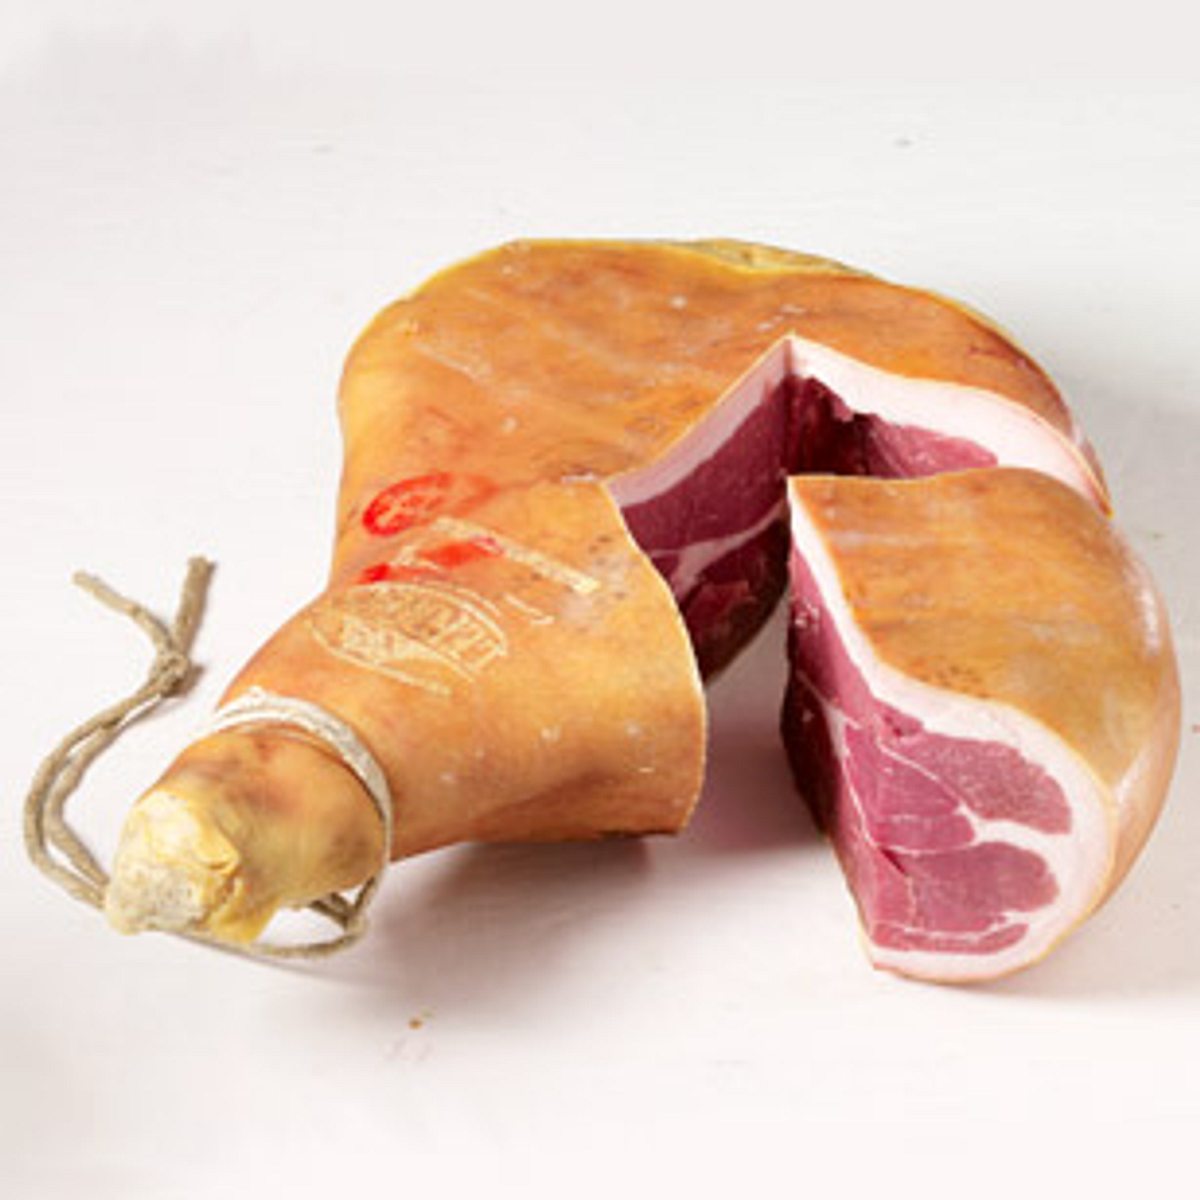 Schinken – würzig-aromatische Fleischspezialität - schinken